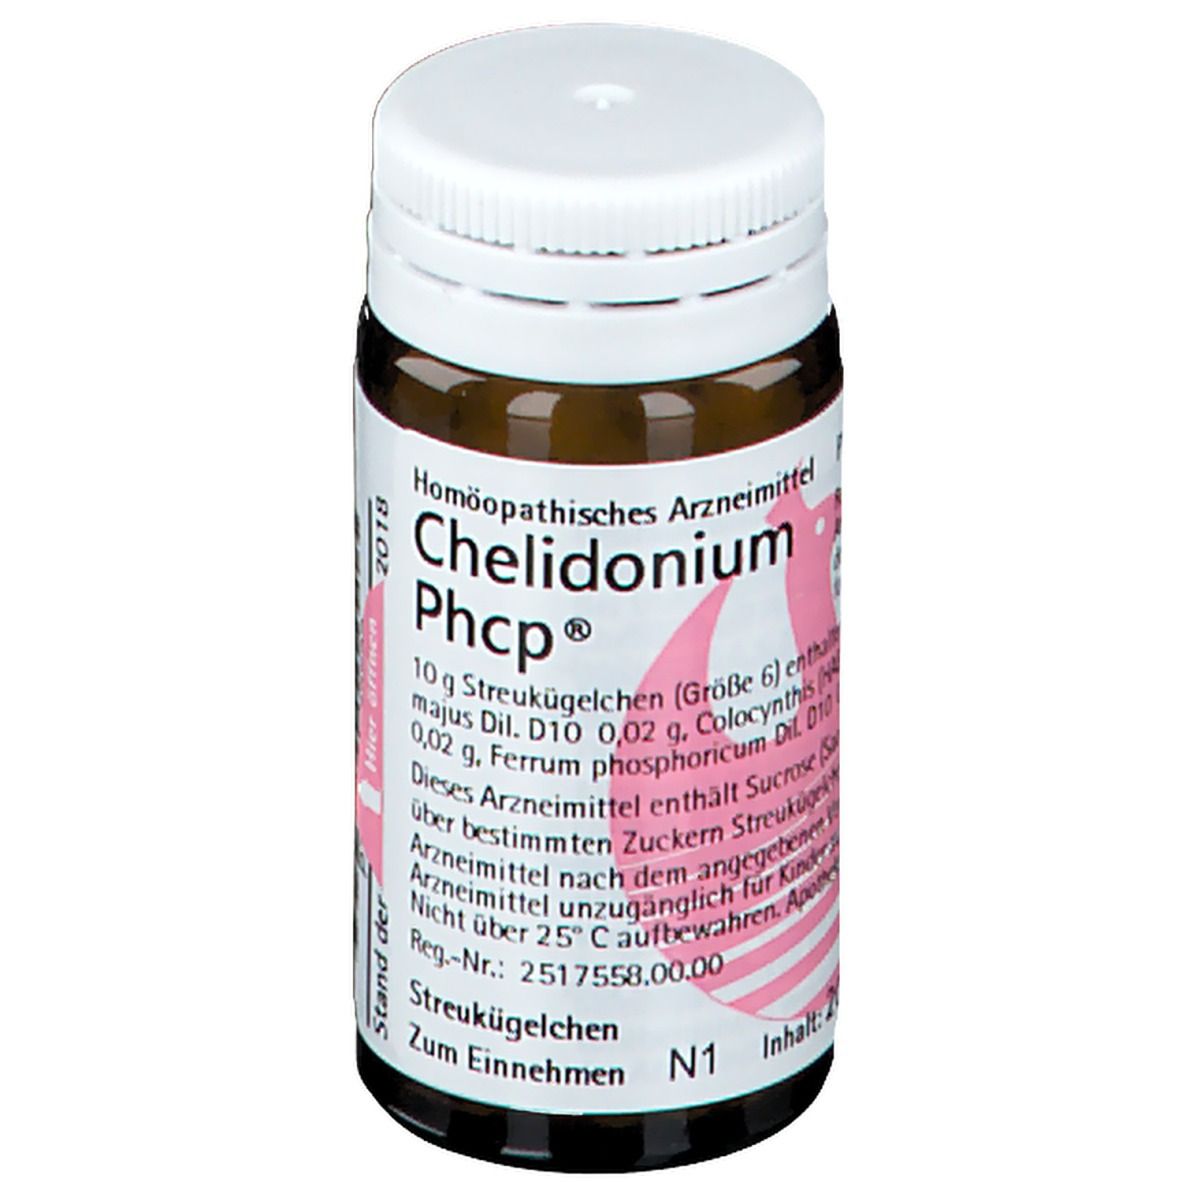 Chelidonium Phcp®